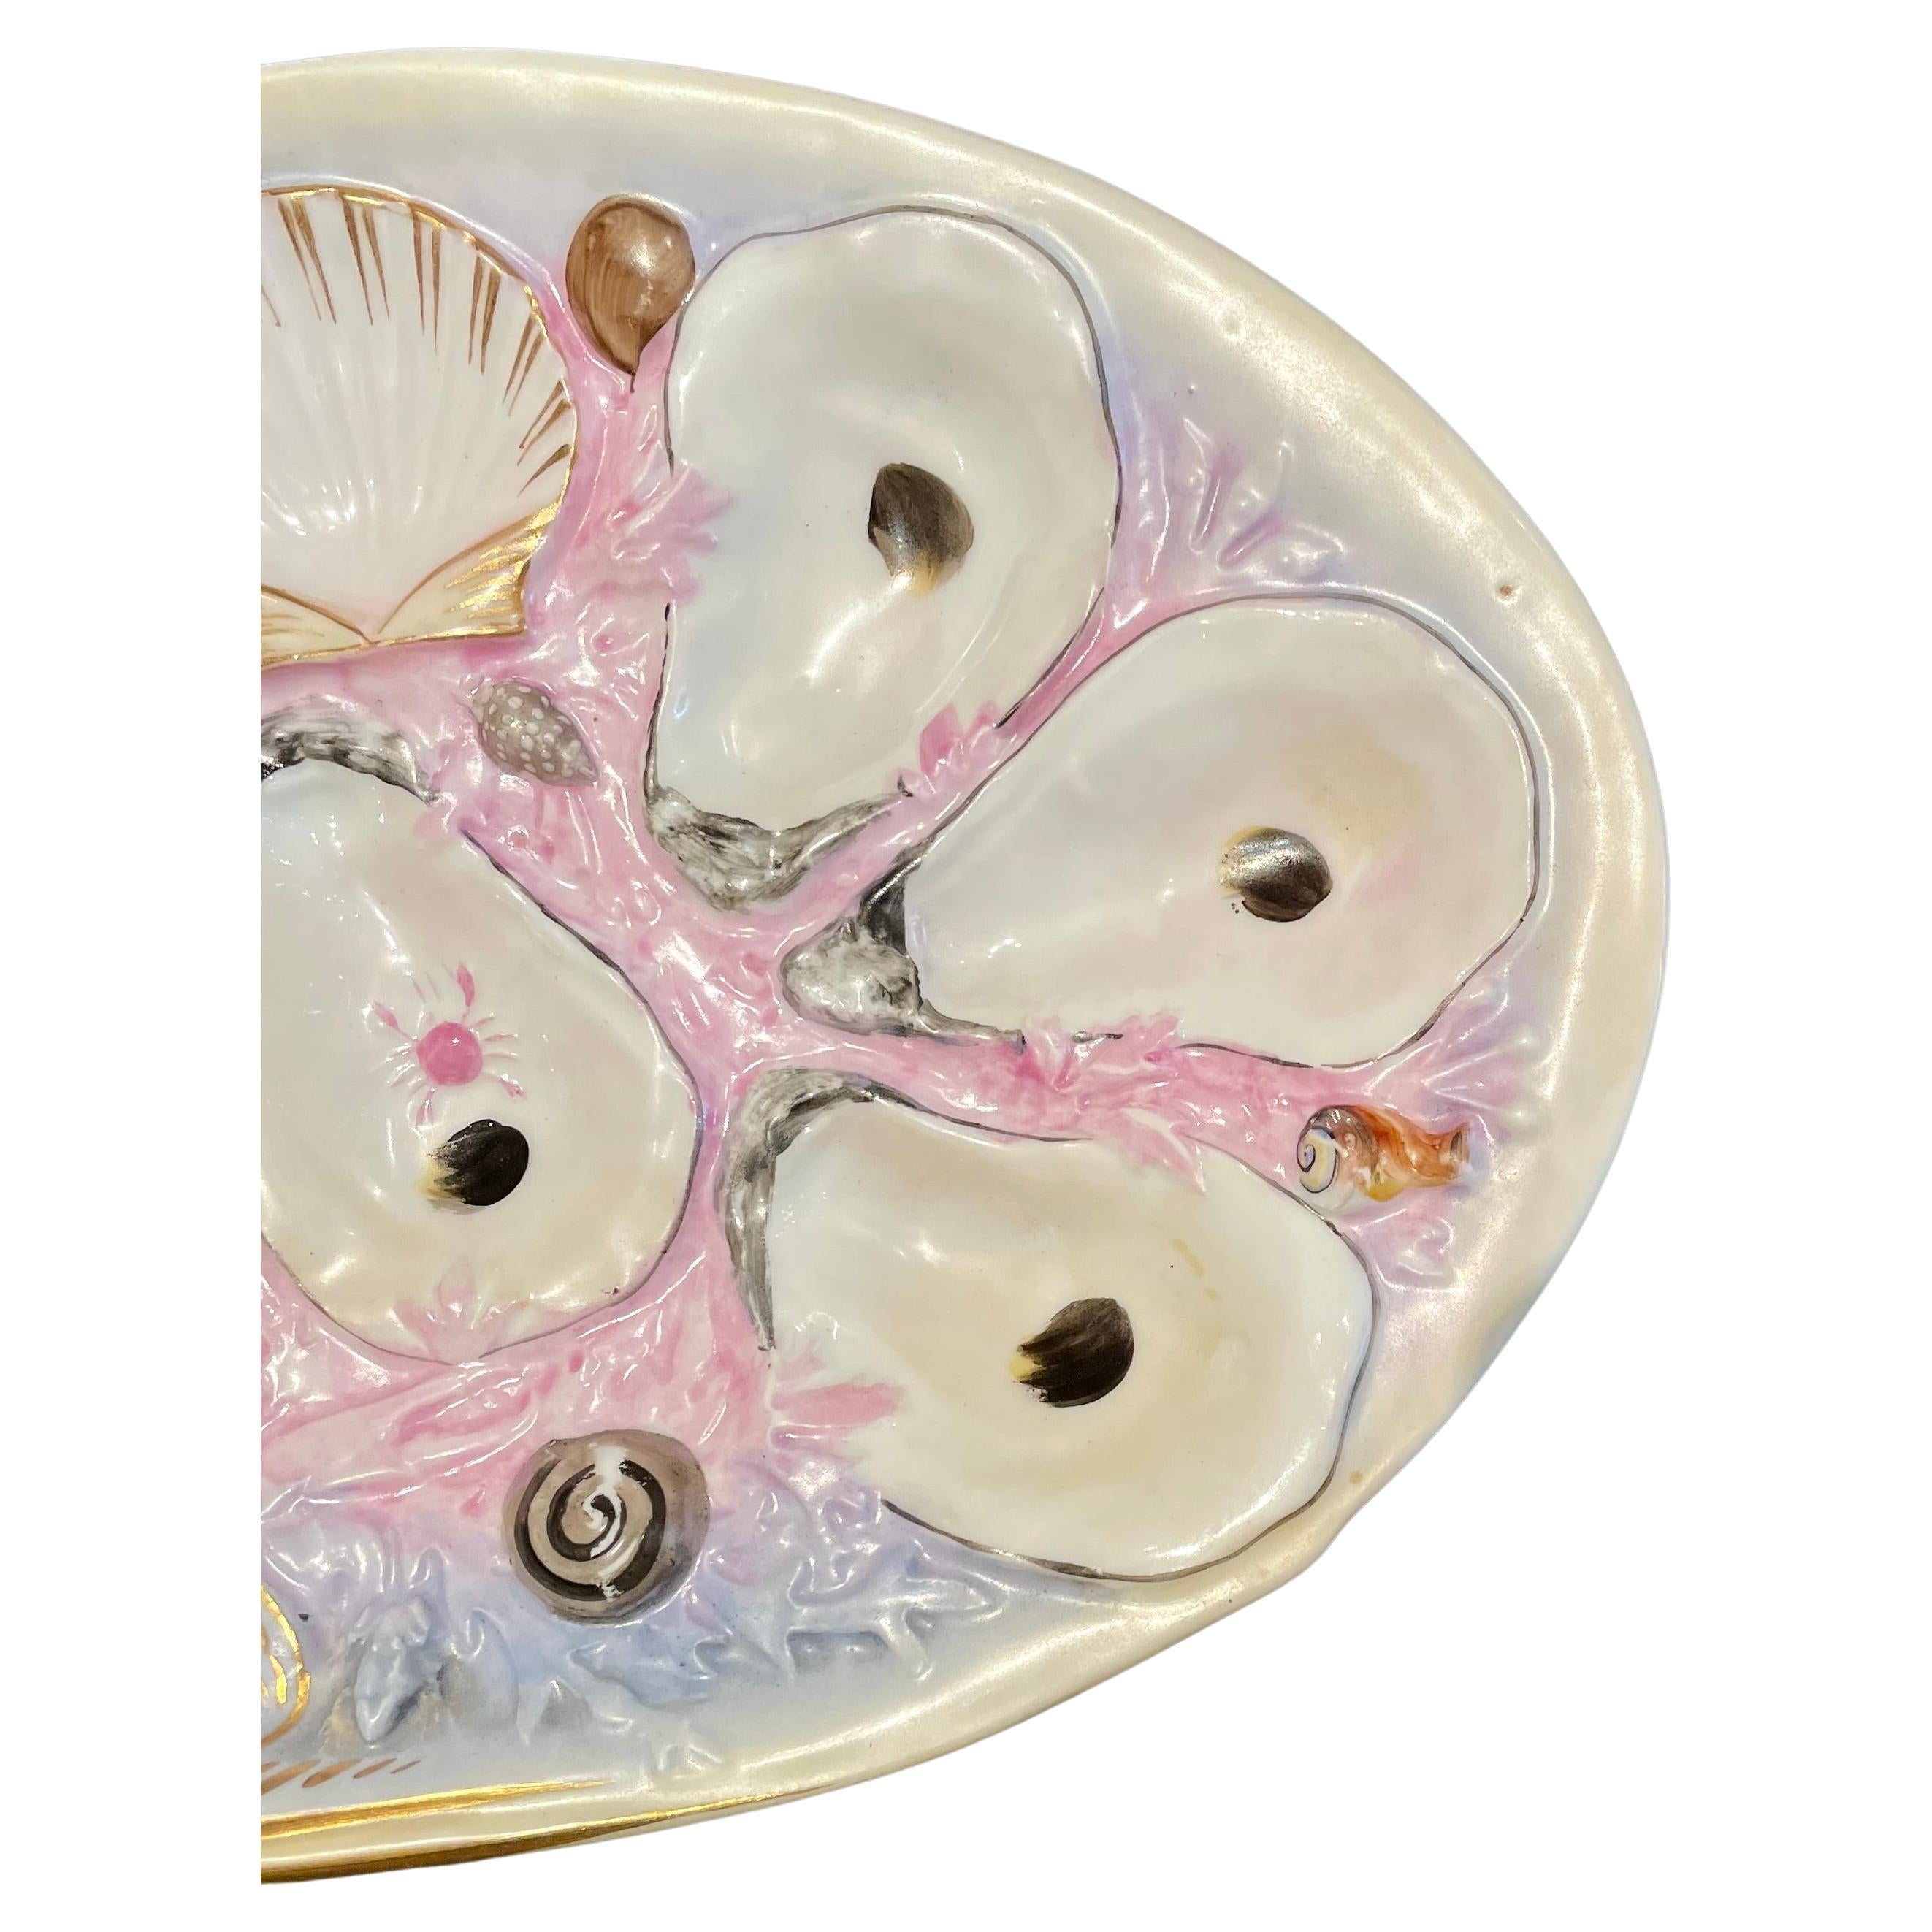 Ancienne assiette à huîtres en porcelaine rose en forme de palourde de Union Porcelain Works, vers les années 1880.
D'une taille inhabituelle pour UPW, il est façonné et peint à la main en rose et violet avec des détails de la vie marine.  
